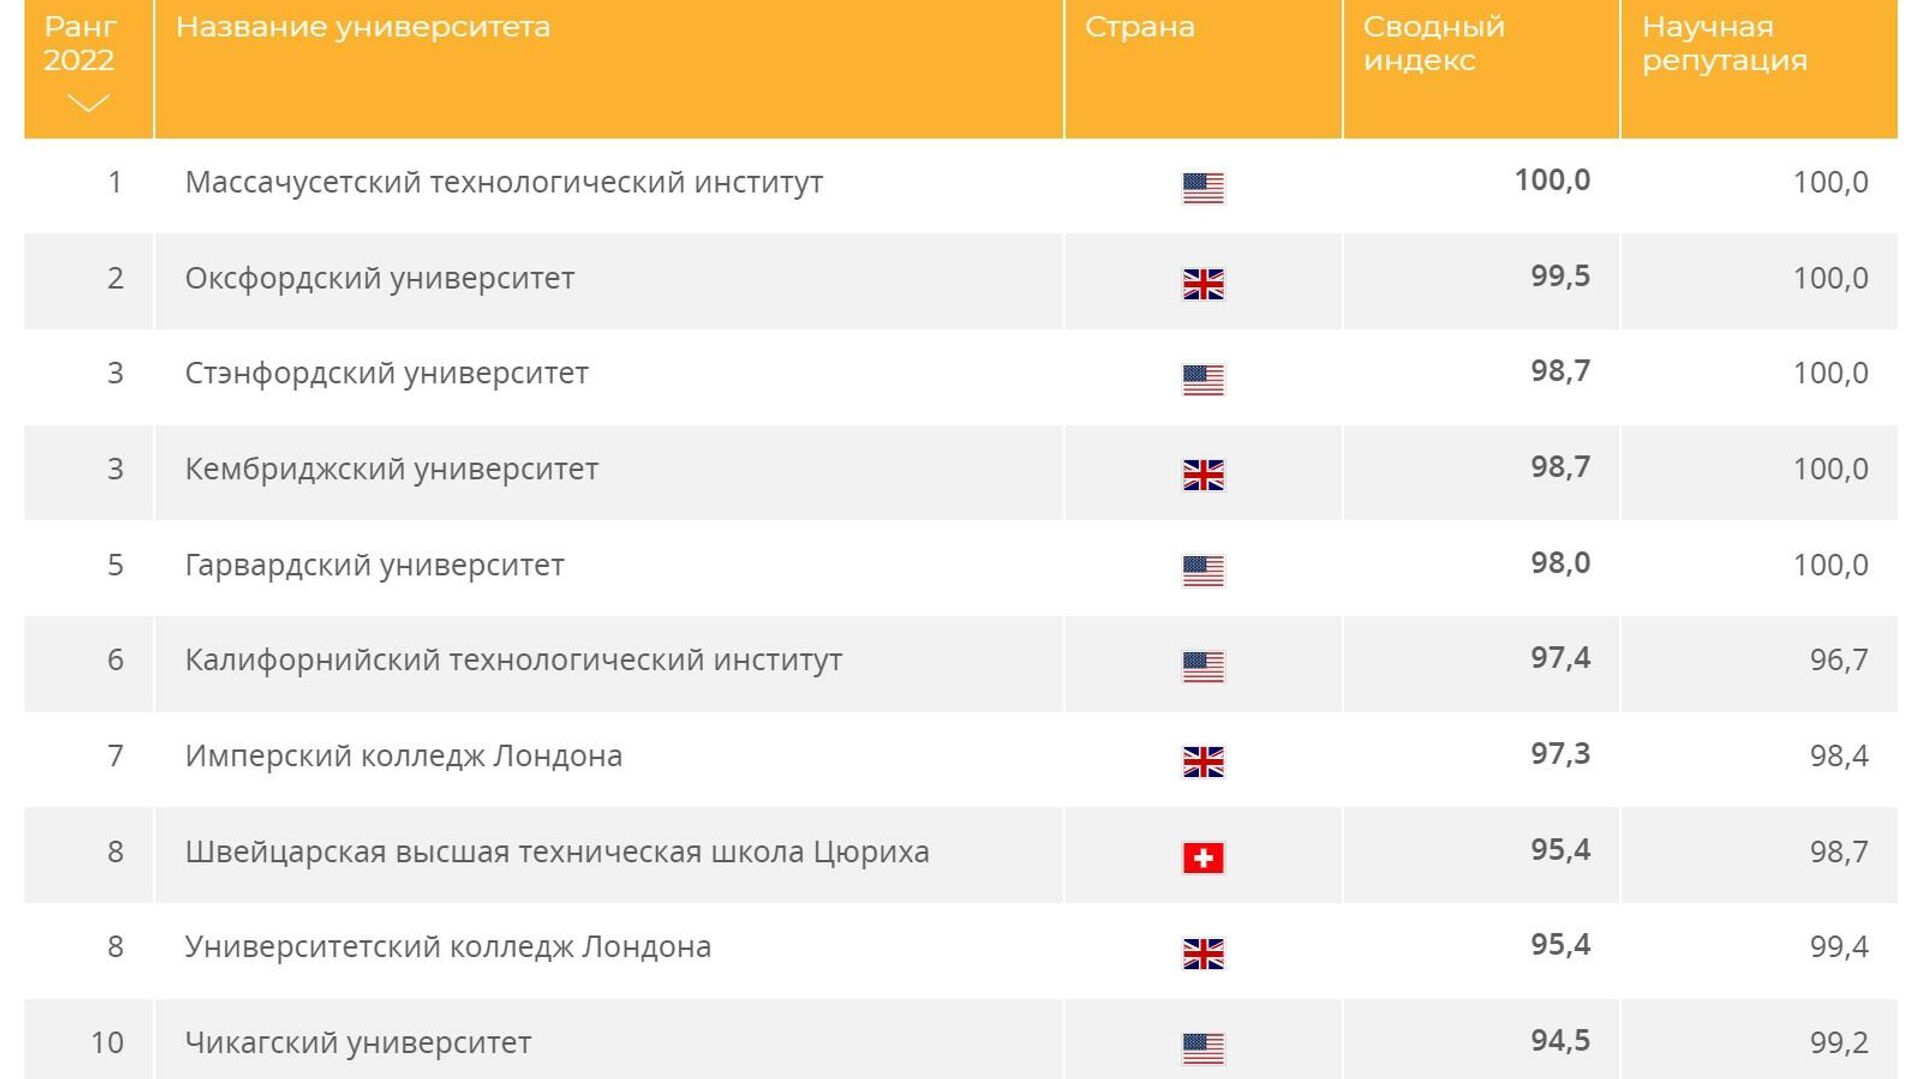 Список московских колледжей. Рейтинг лучших российских вузов в 2022.